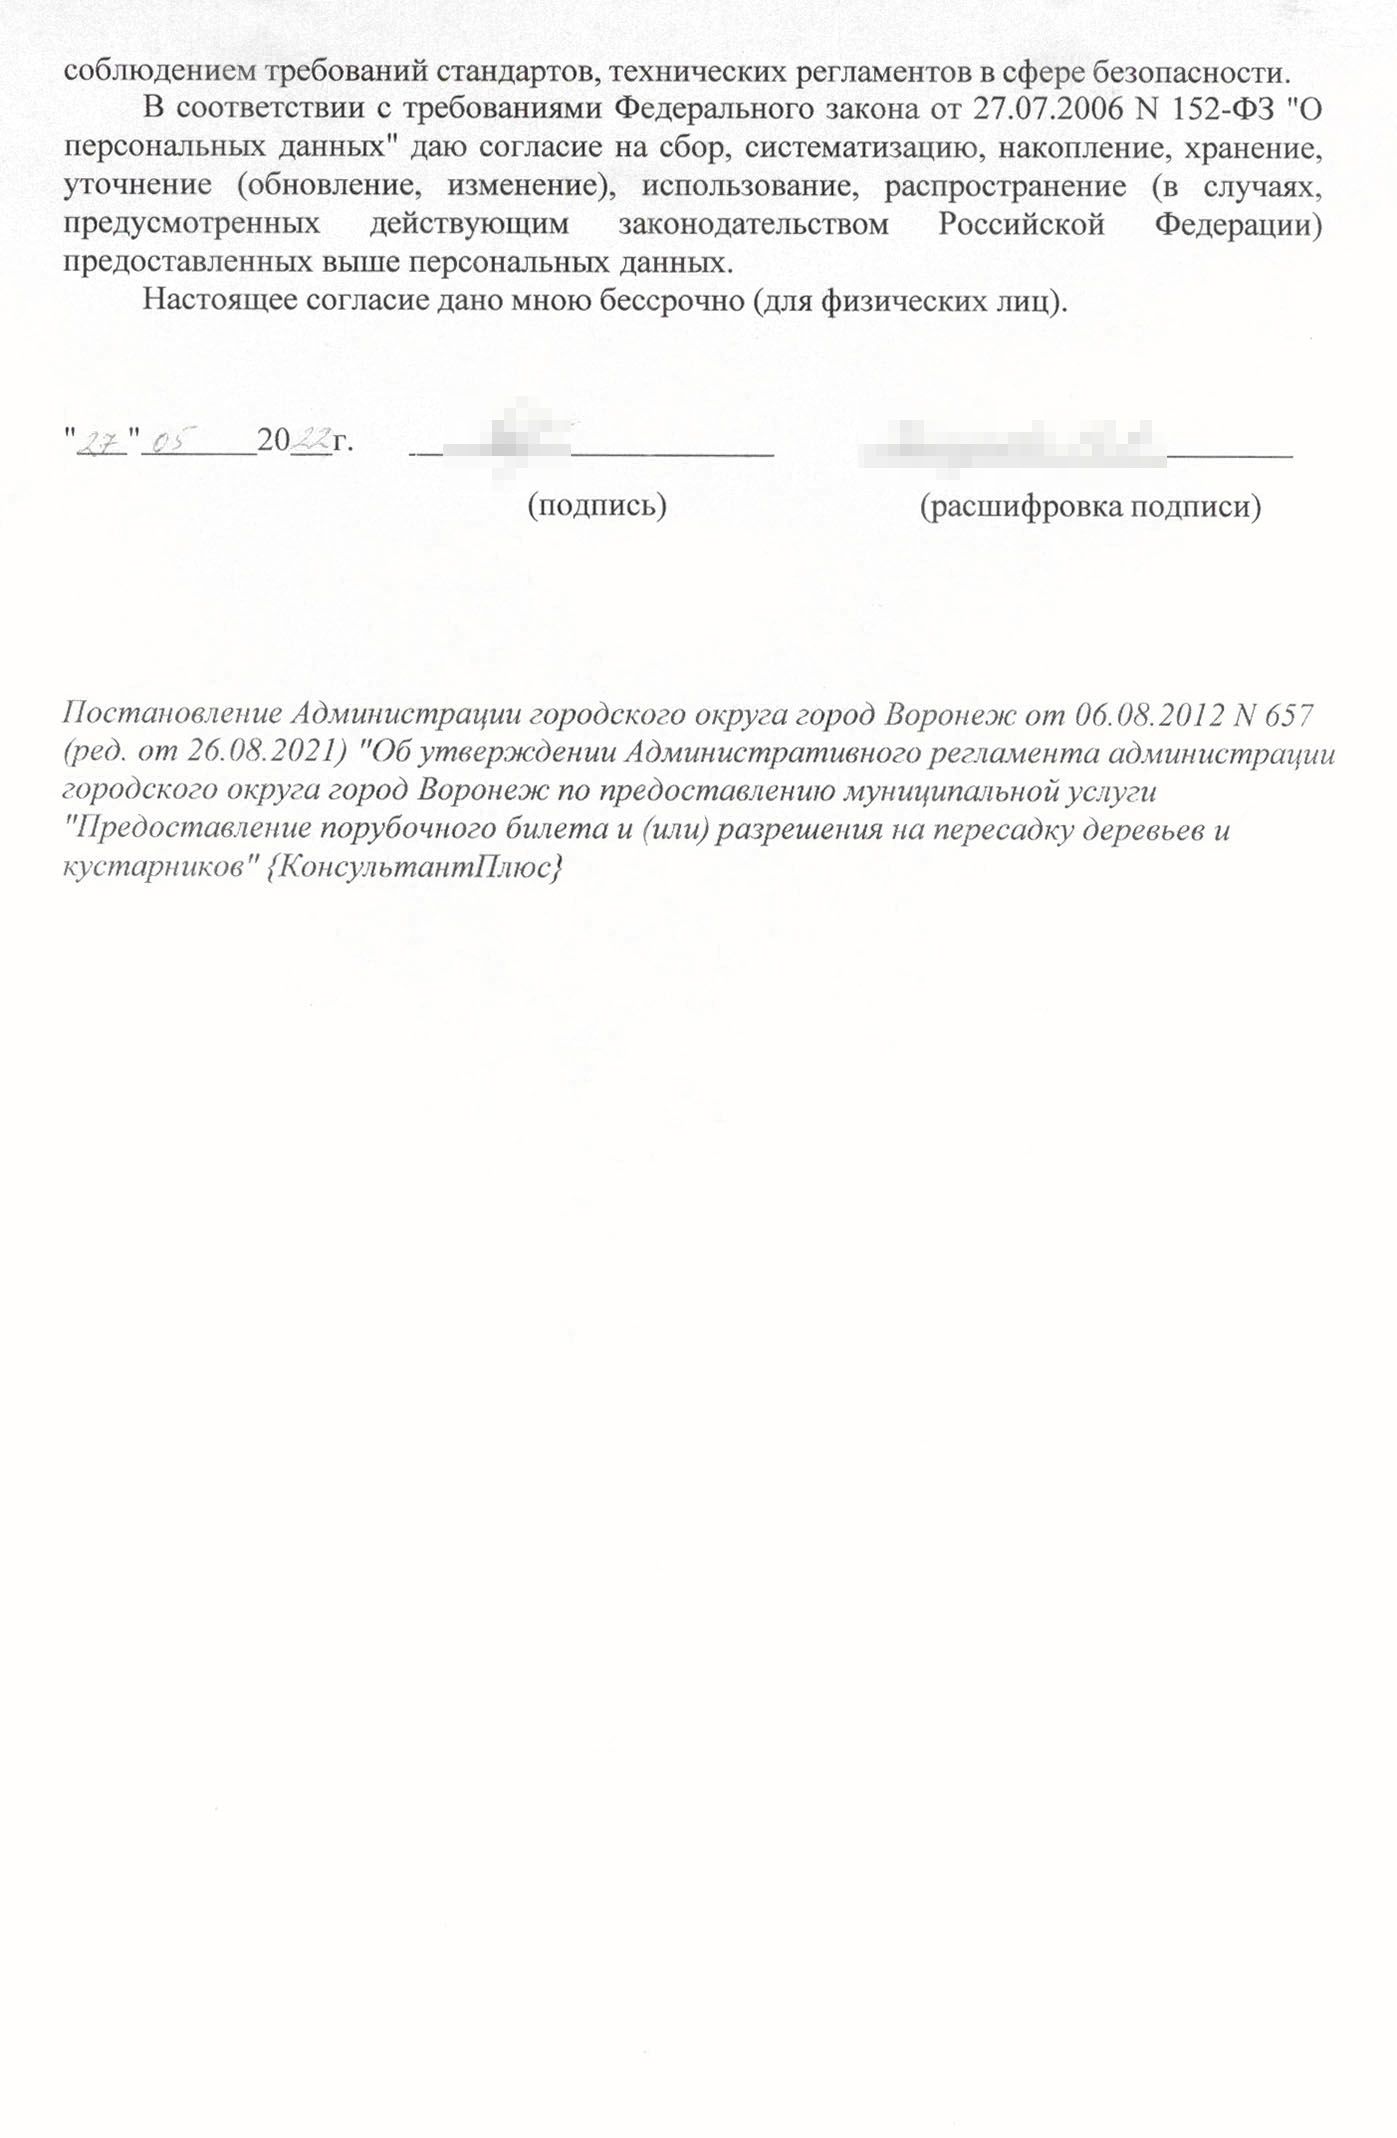 Так может выглядеть образец заявления на порубочный билет в Воронеже. Источник: Управление экологии Воронежа